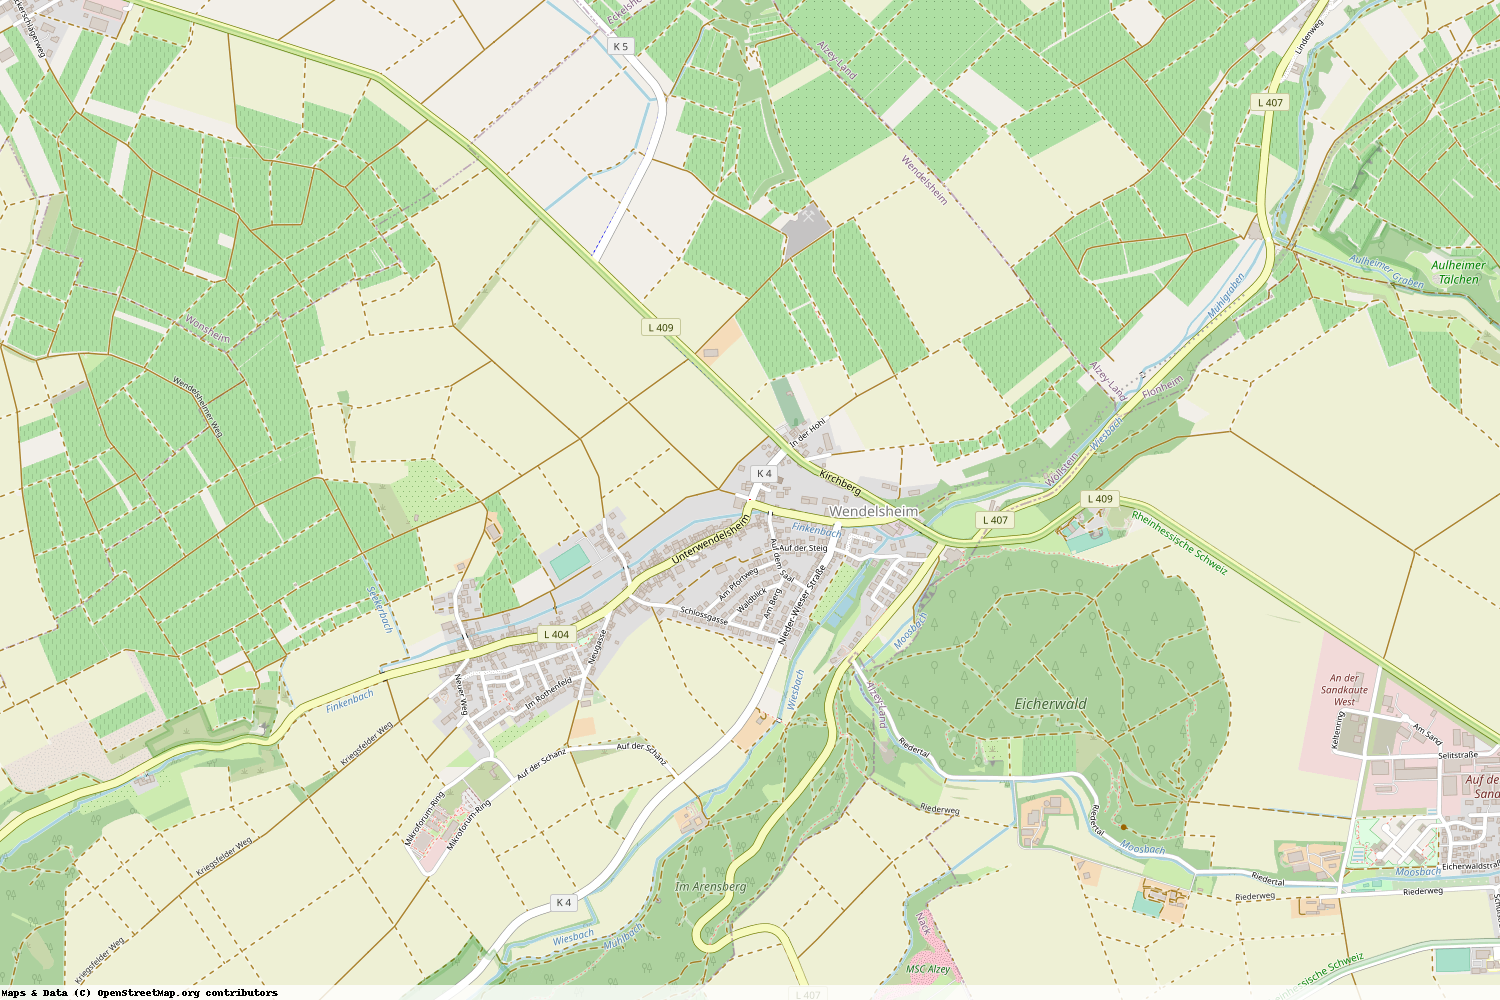 Ist gerade Stromausfall in Rheinland-Pfalz - Alzey-Worms - Wendelsheim?